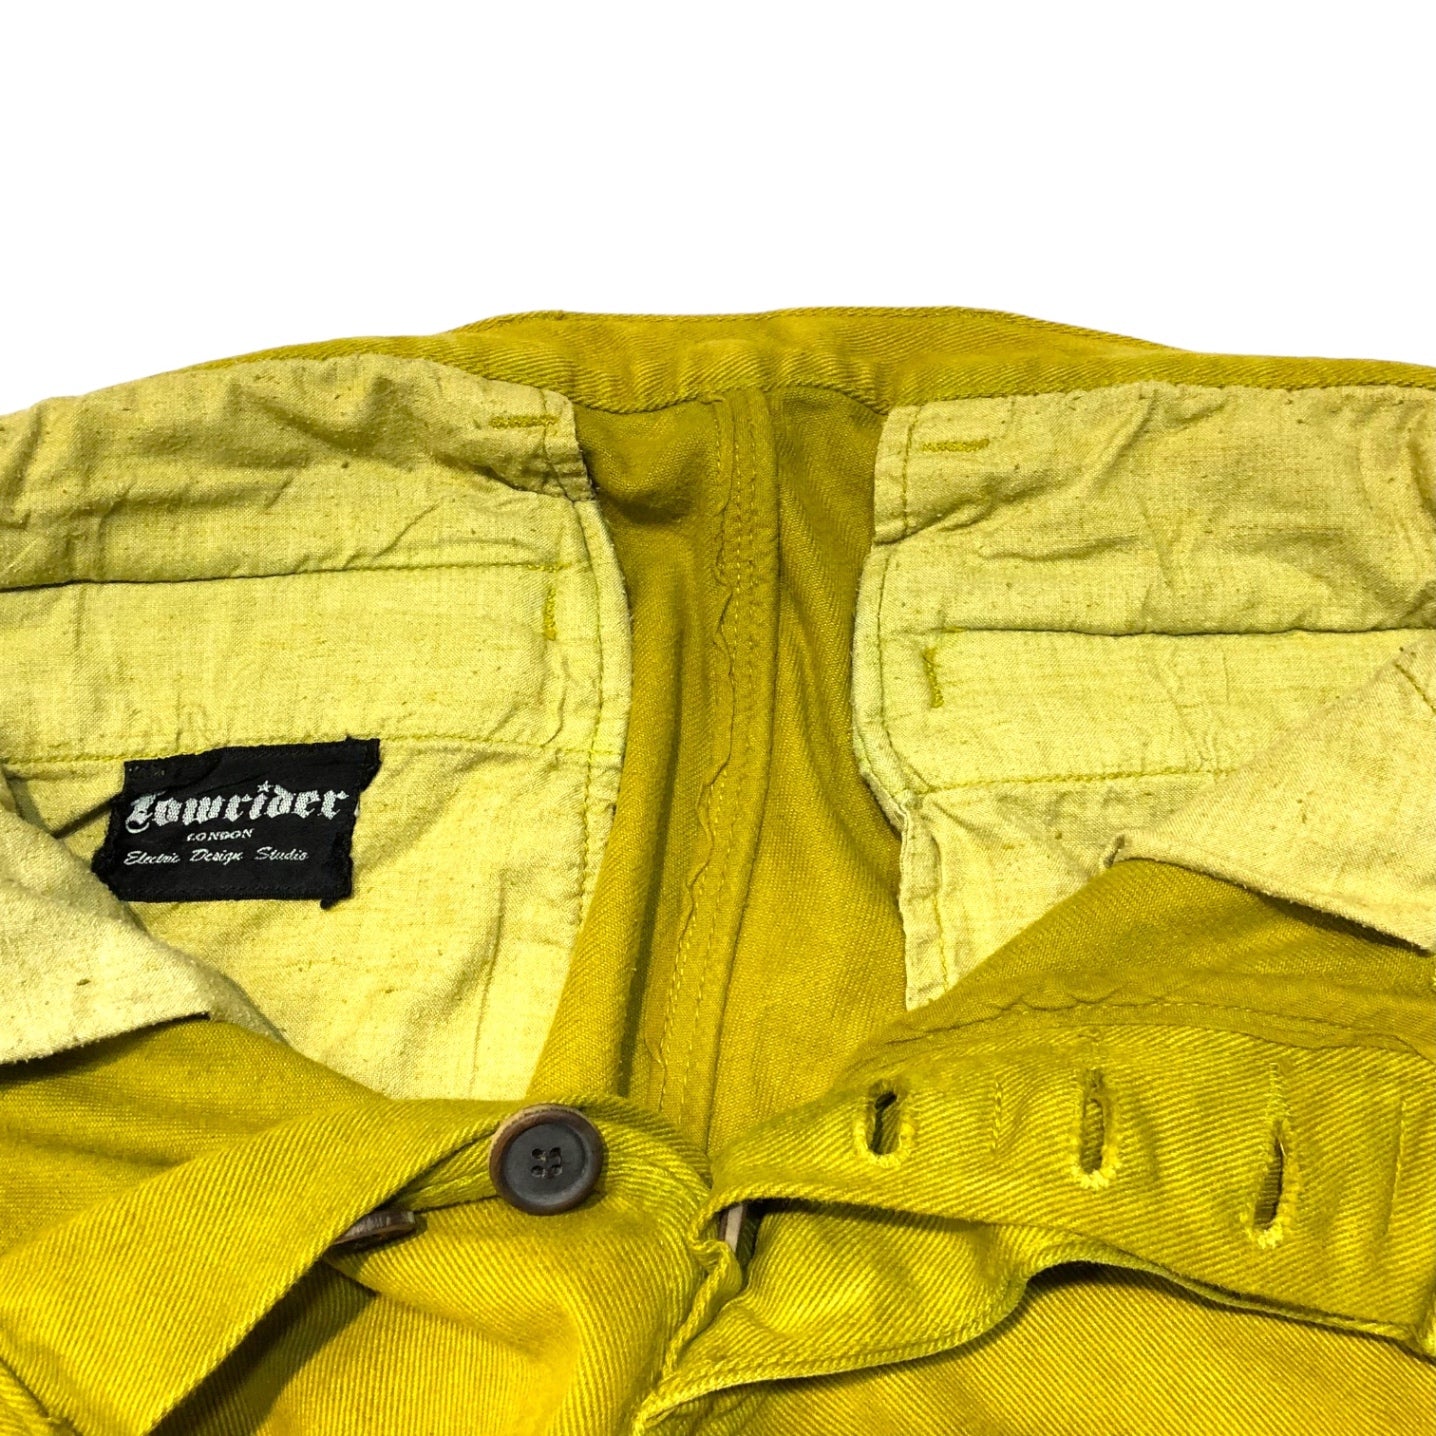 LOWRIDER(ローライダー) cargo denim pants カーゴ デニム パンツ W30 イエロー UK イギリス製 ジーンズ